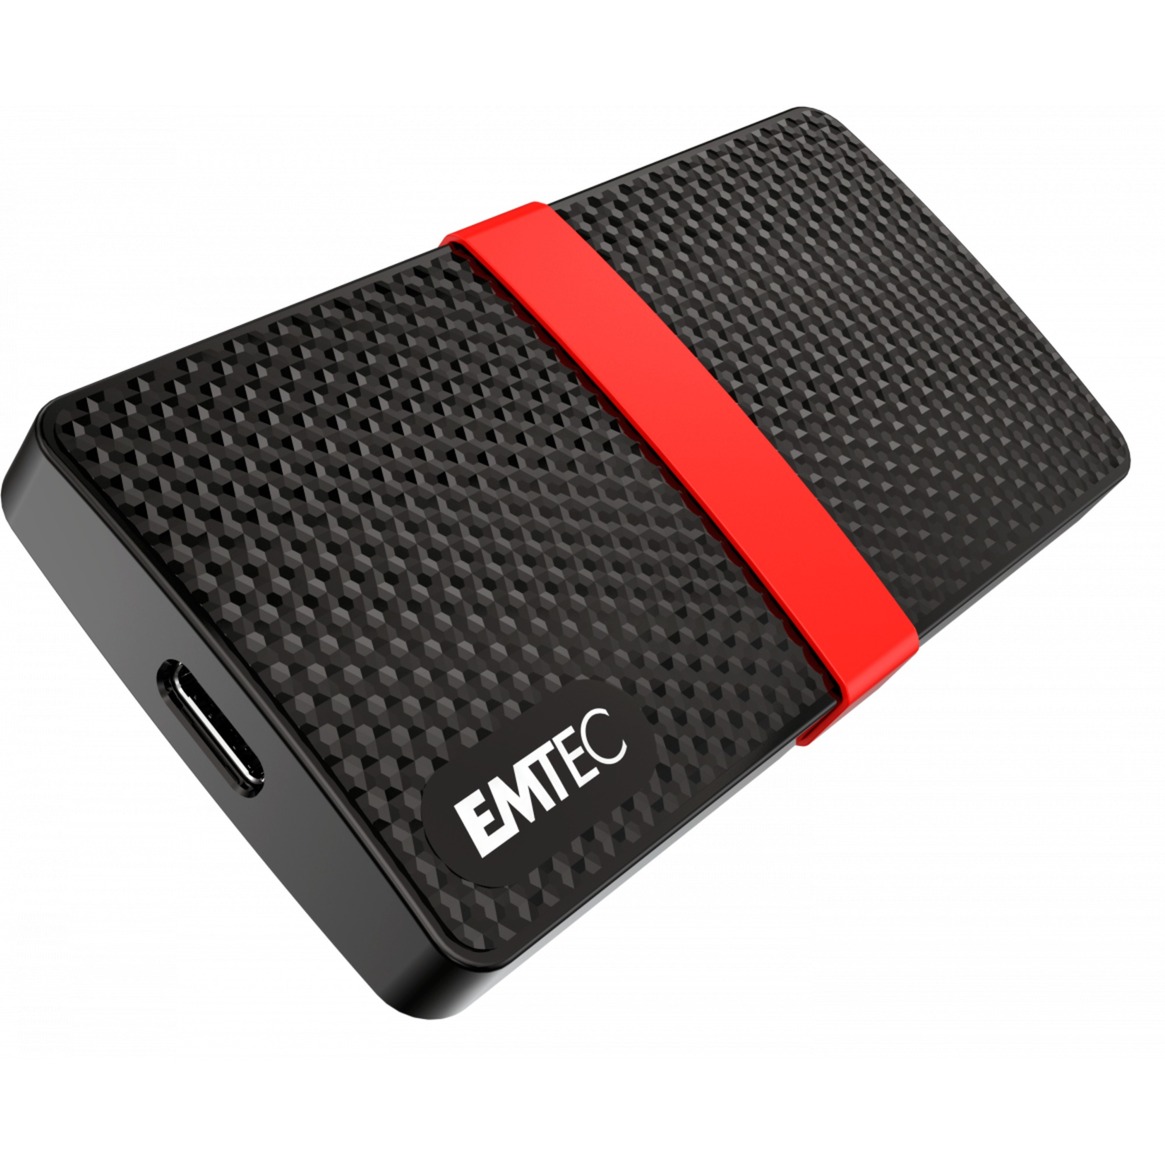 Image of Alternate - X200 Portable SSD 256 GB, Externe SSD online einkaufen bei Alternate